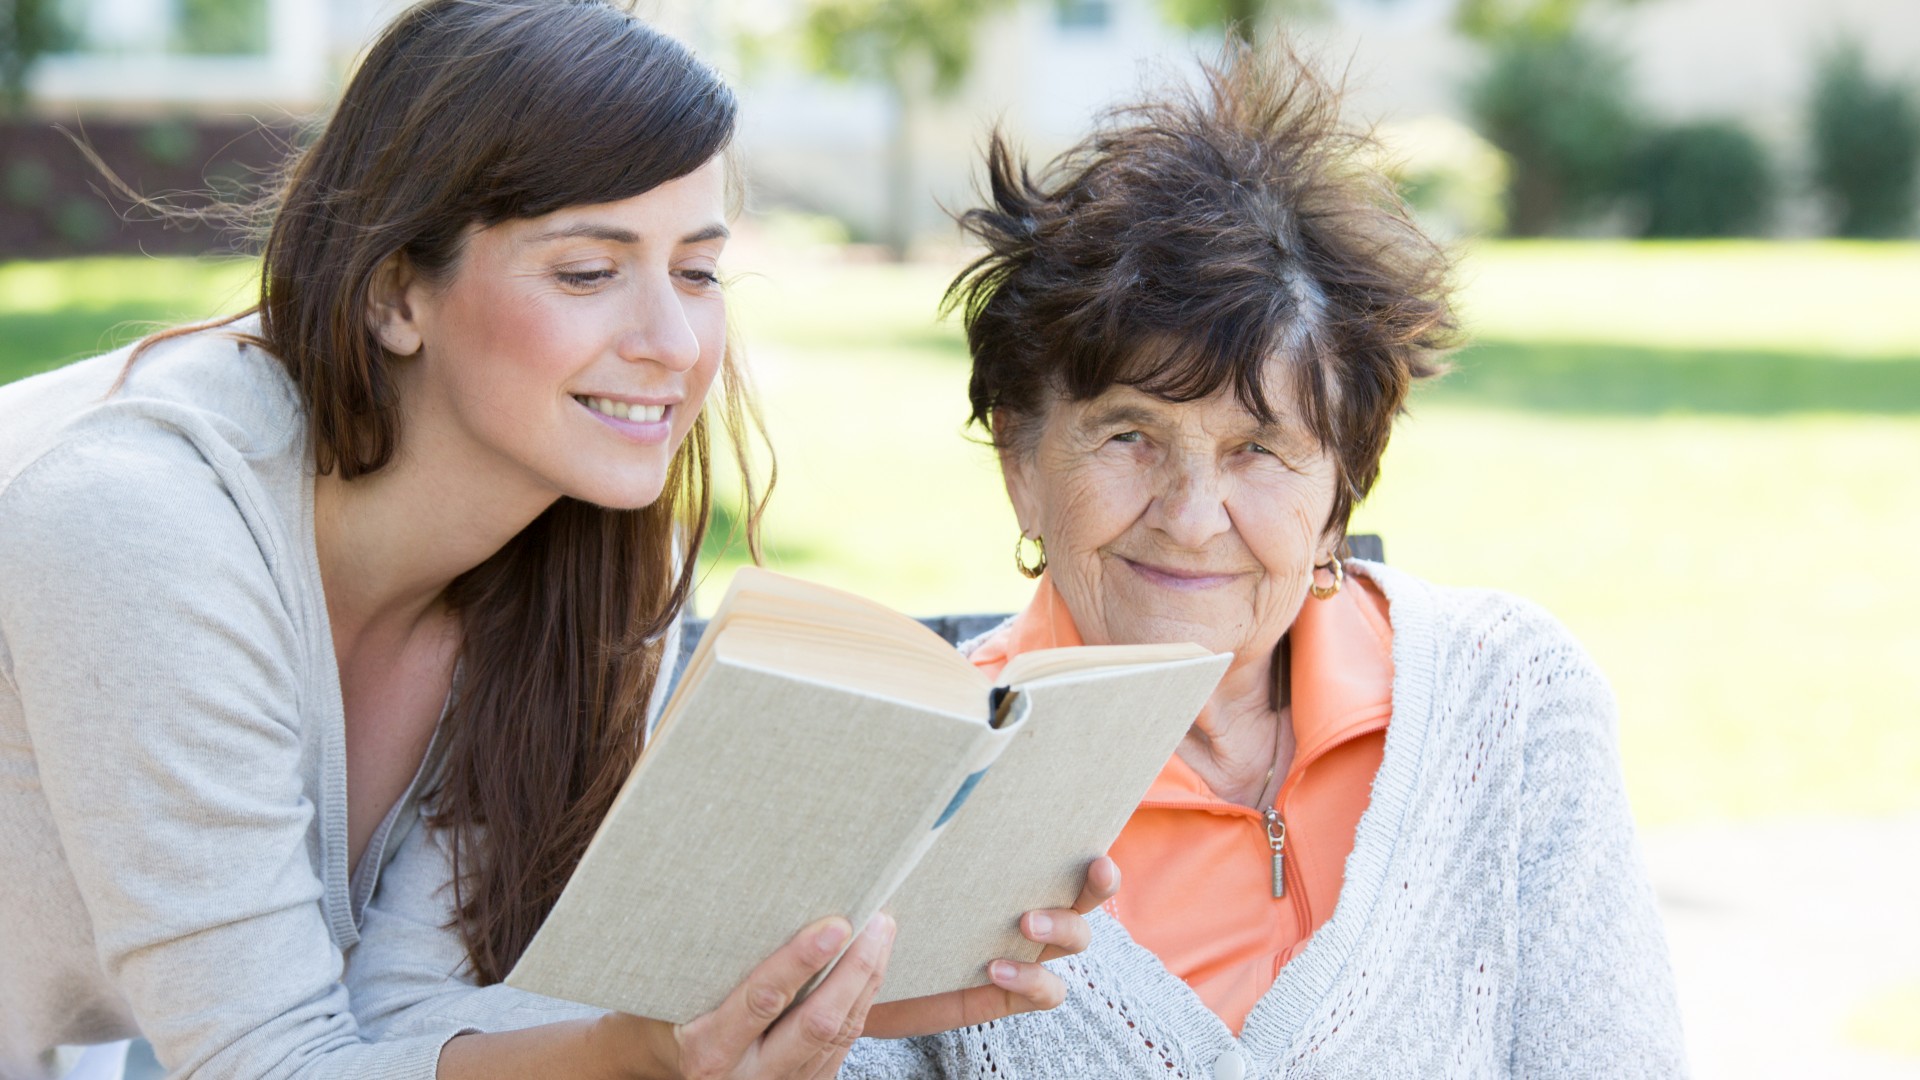 Jüngere Frau liest älterer Frau etwas aus einem Buch vor.